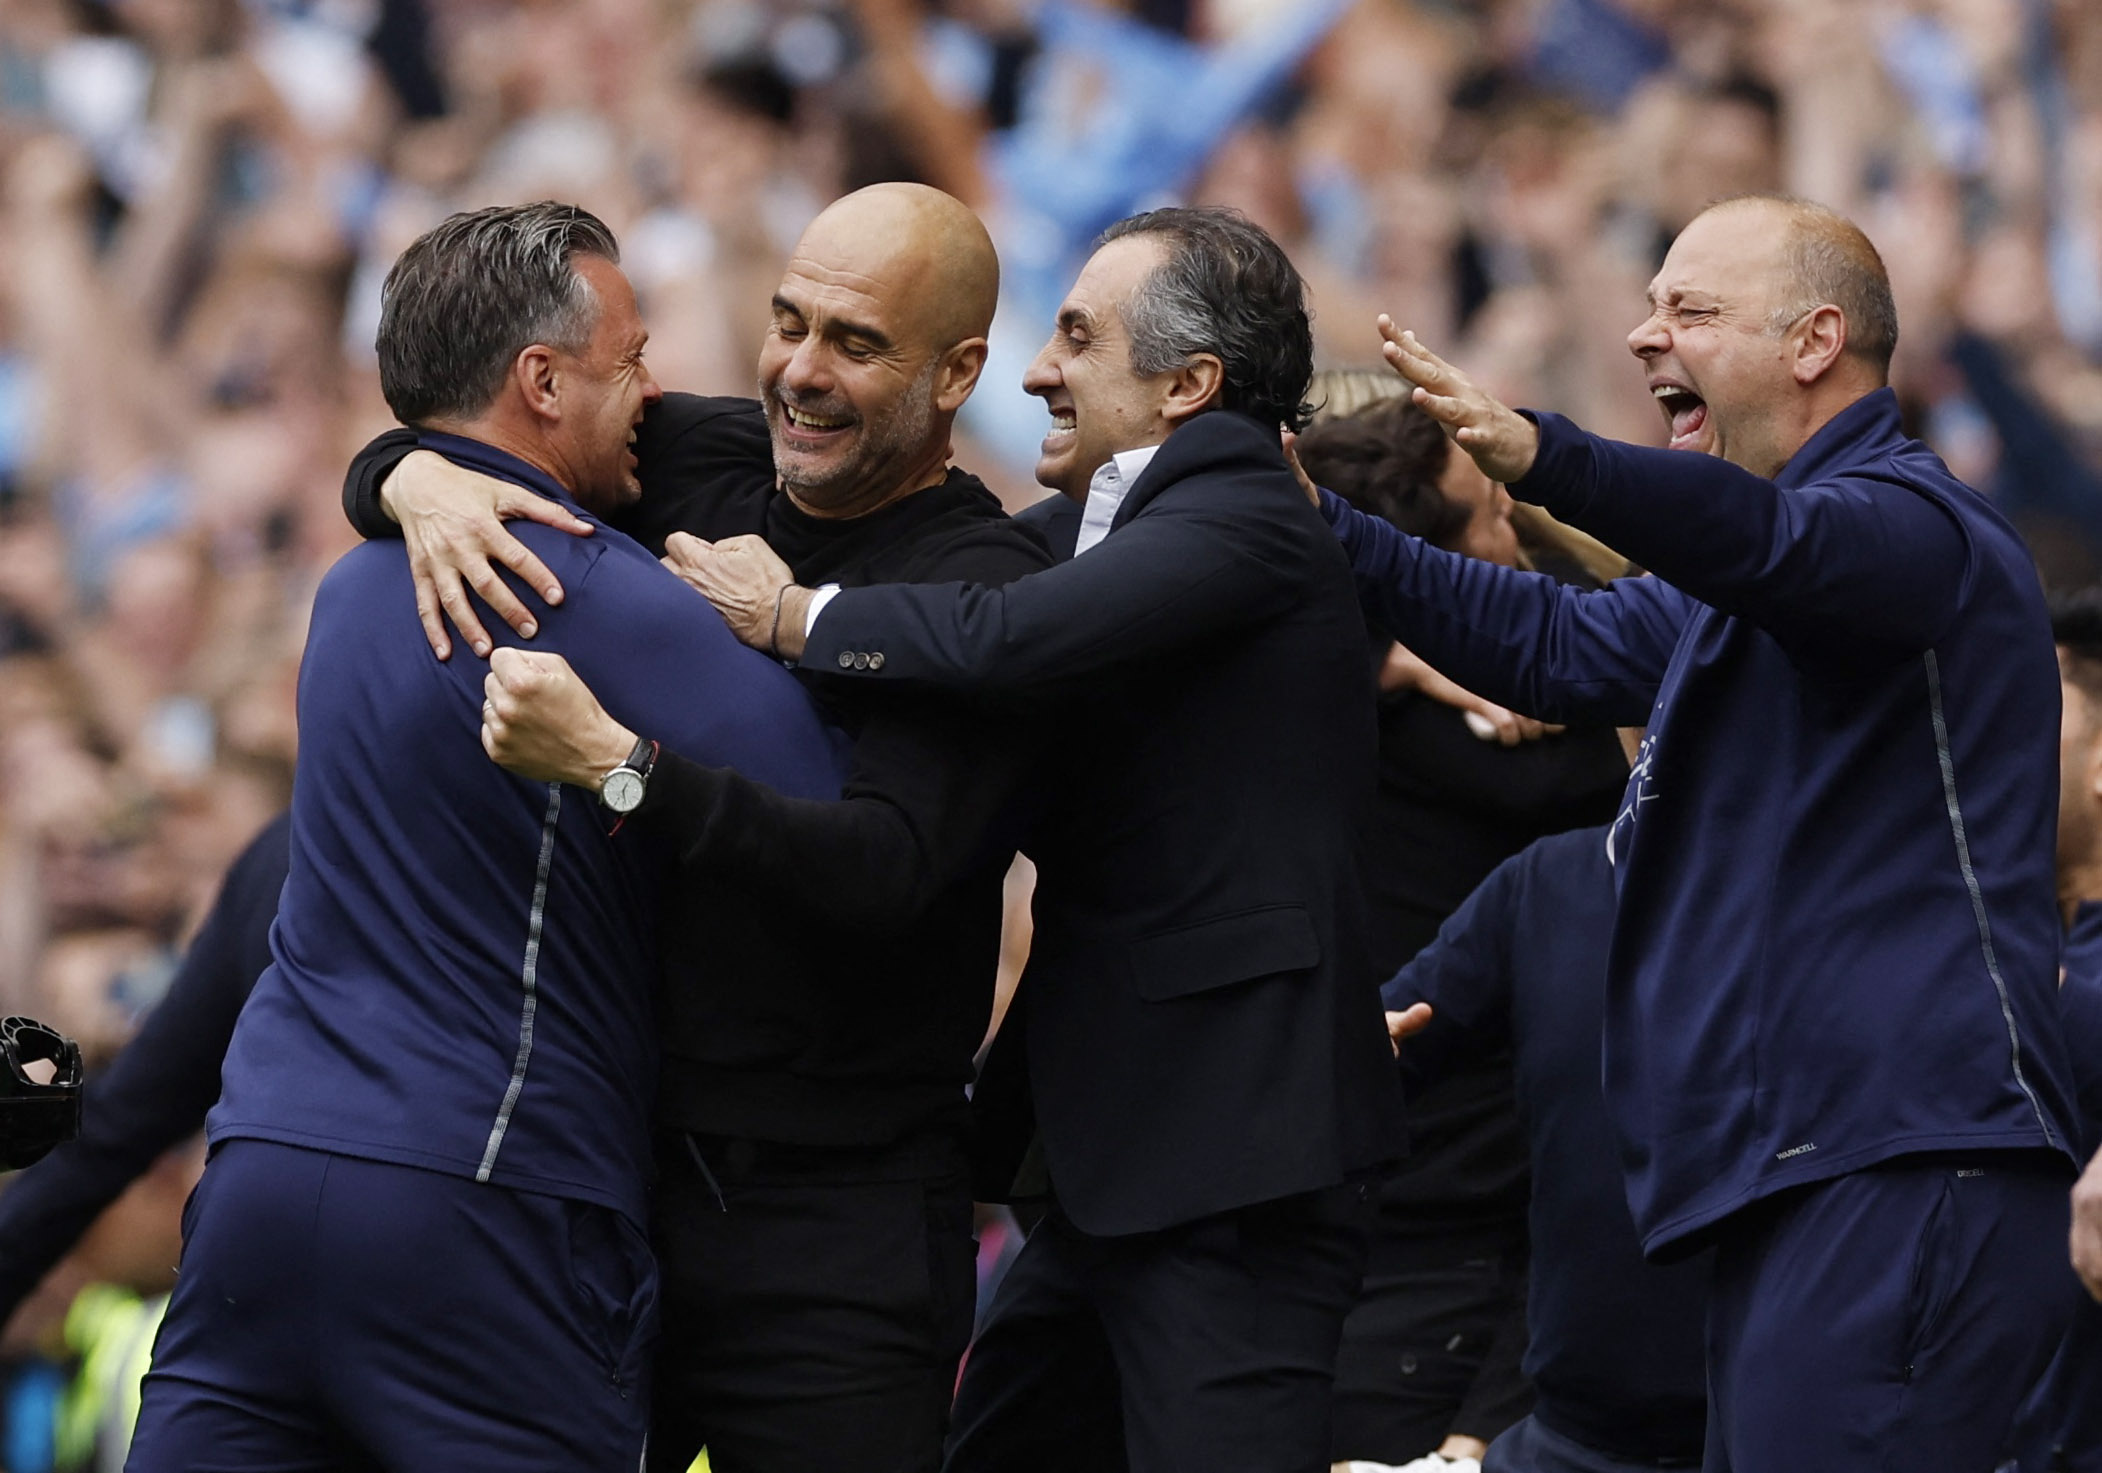 La celebración inicial de Pep con sus colaboradores segundos después de que finalizara el partido contra el Aston Villa (Foto: Reuters)